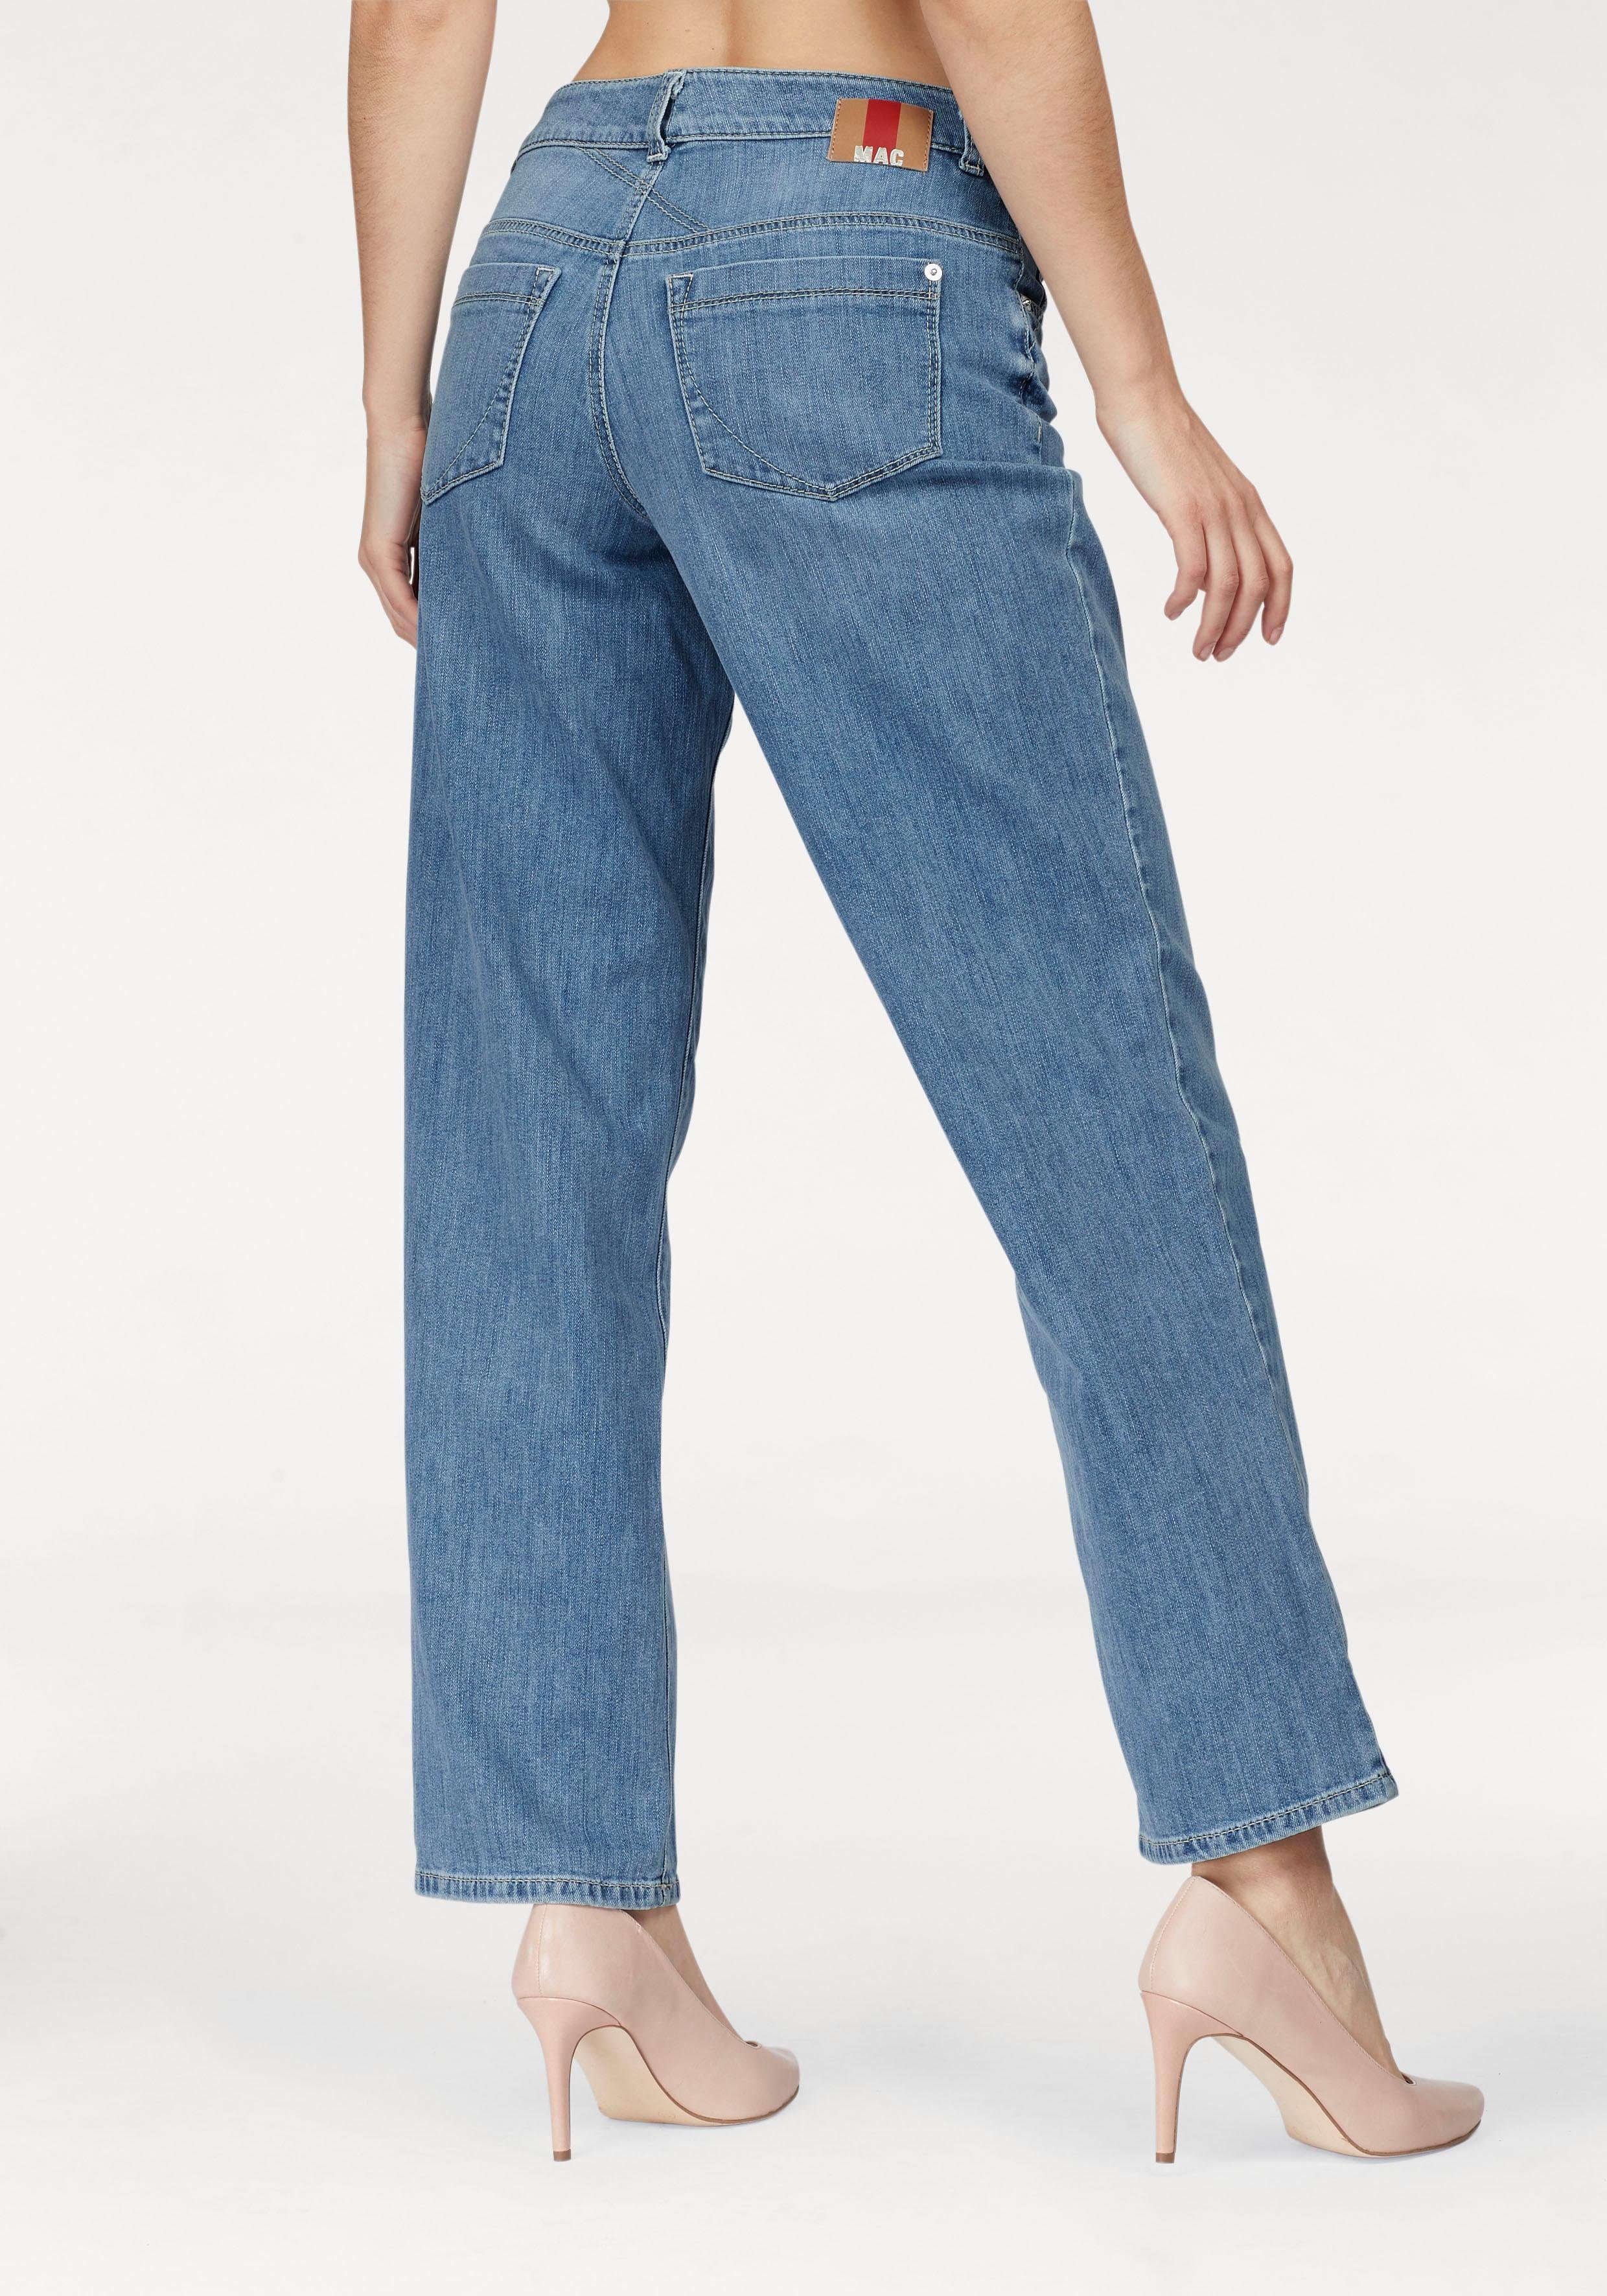 Mac NU 15% KORTING: MAC prettige jeans Gracia